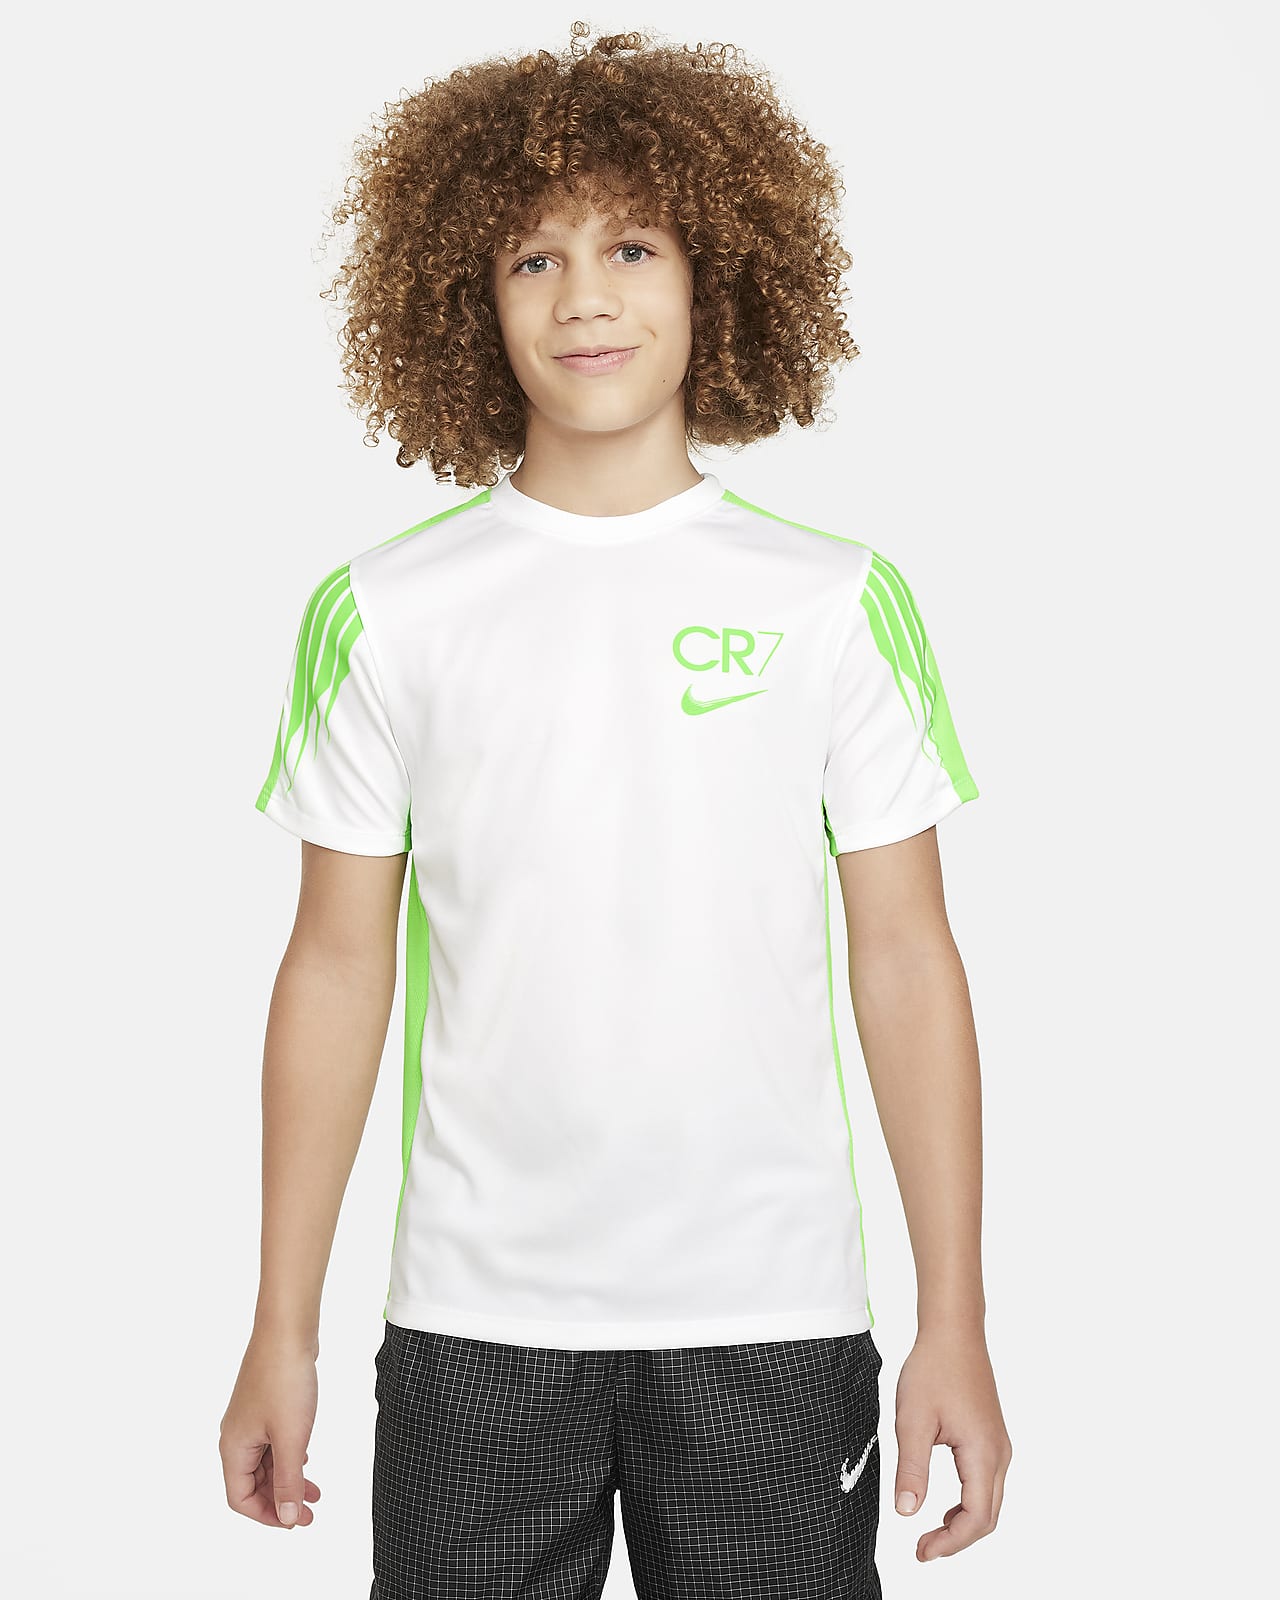 Nike CR7 Galaxy Dri Fit Shirt XXL 2XL